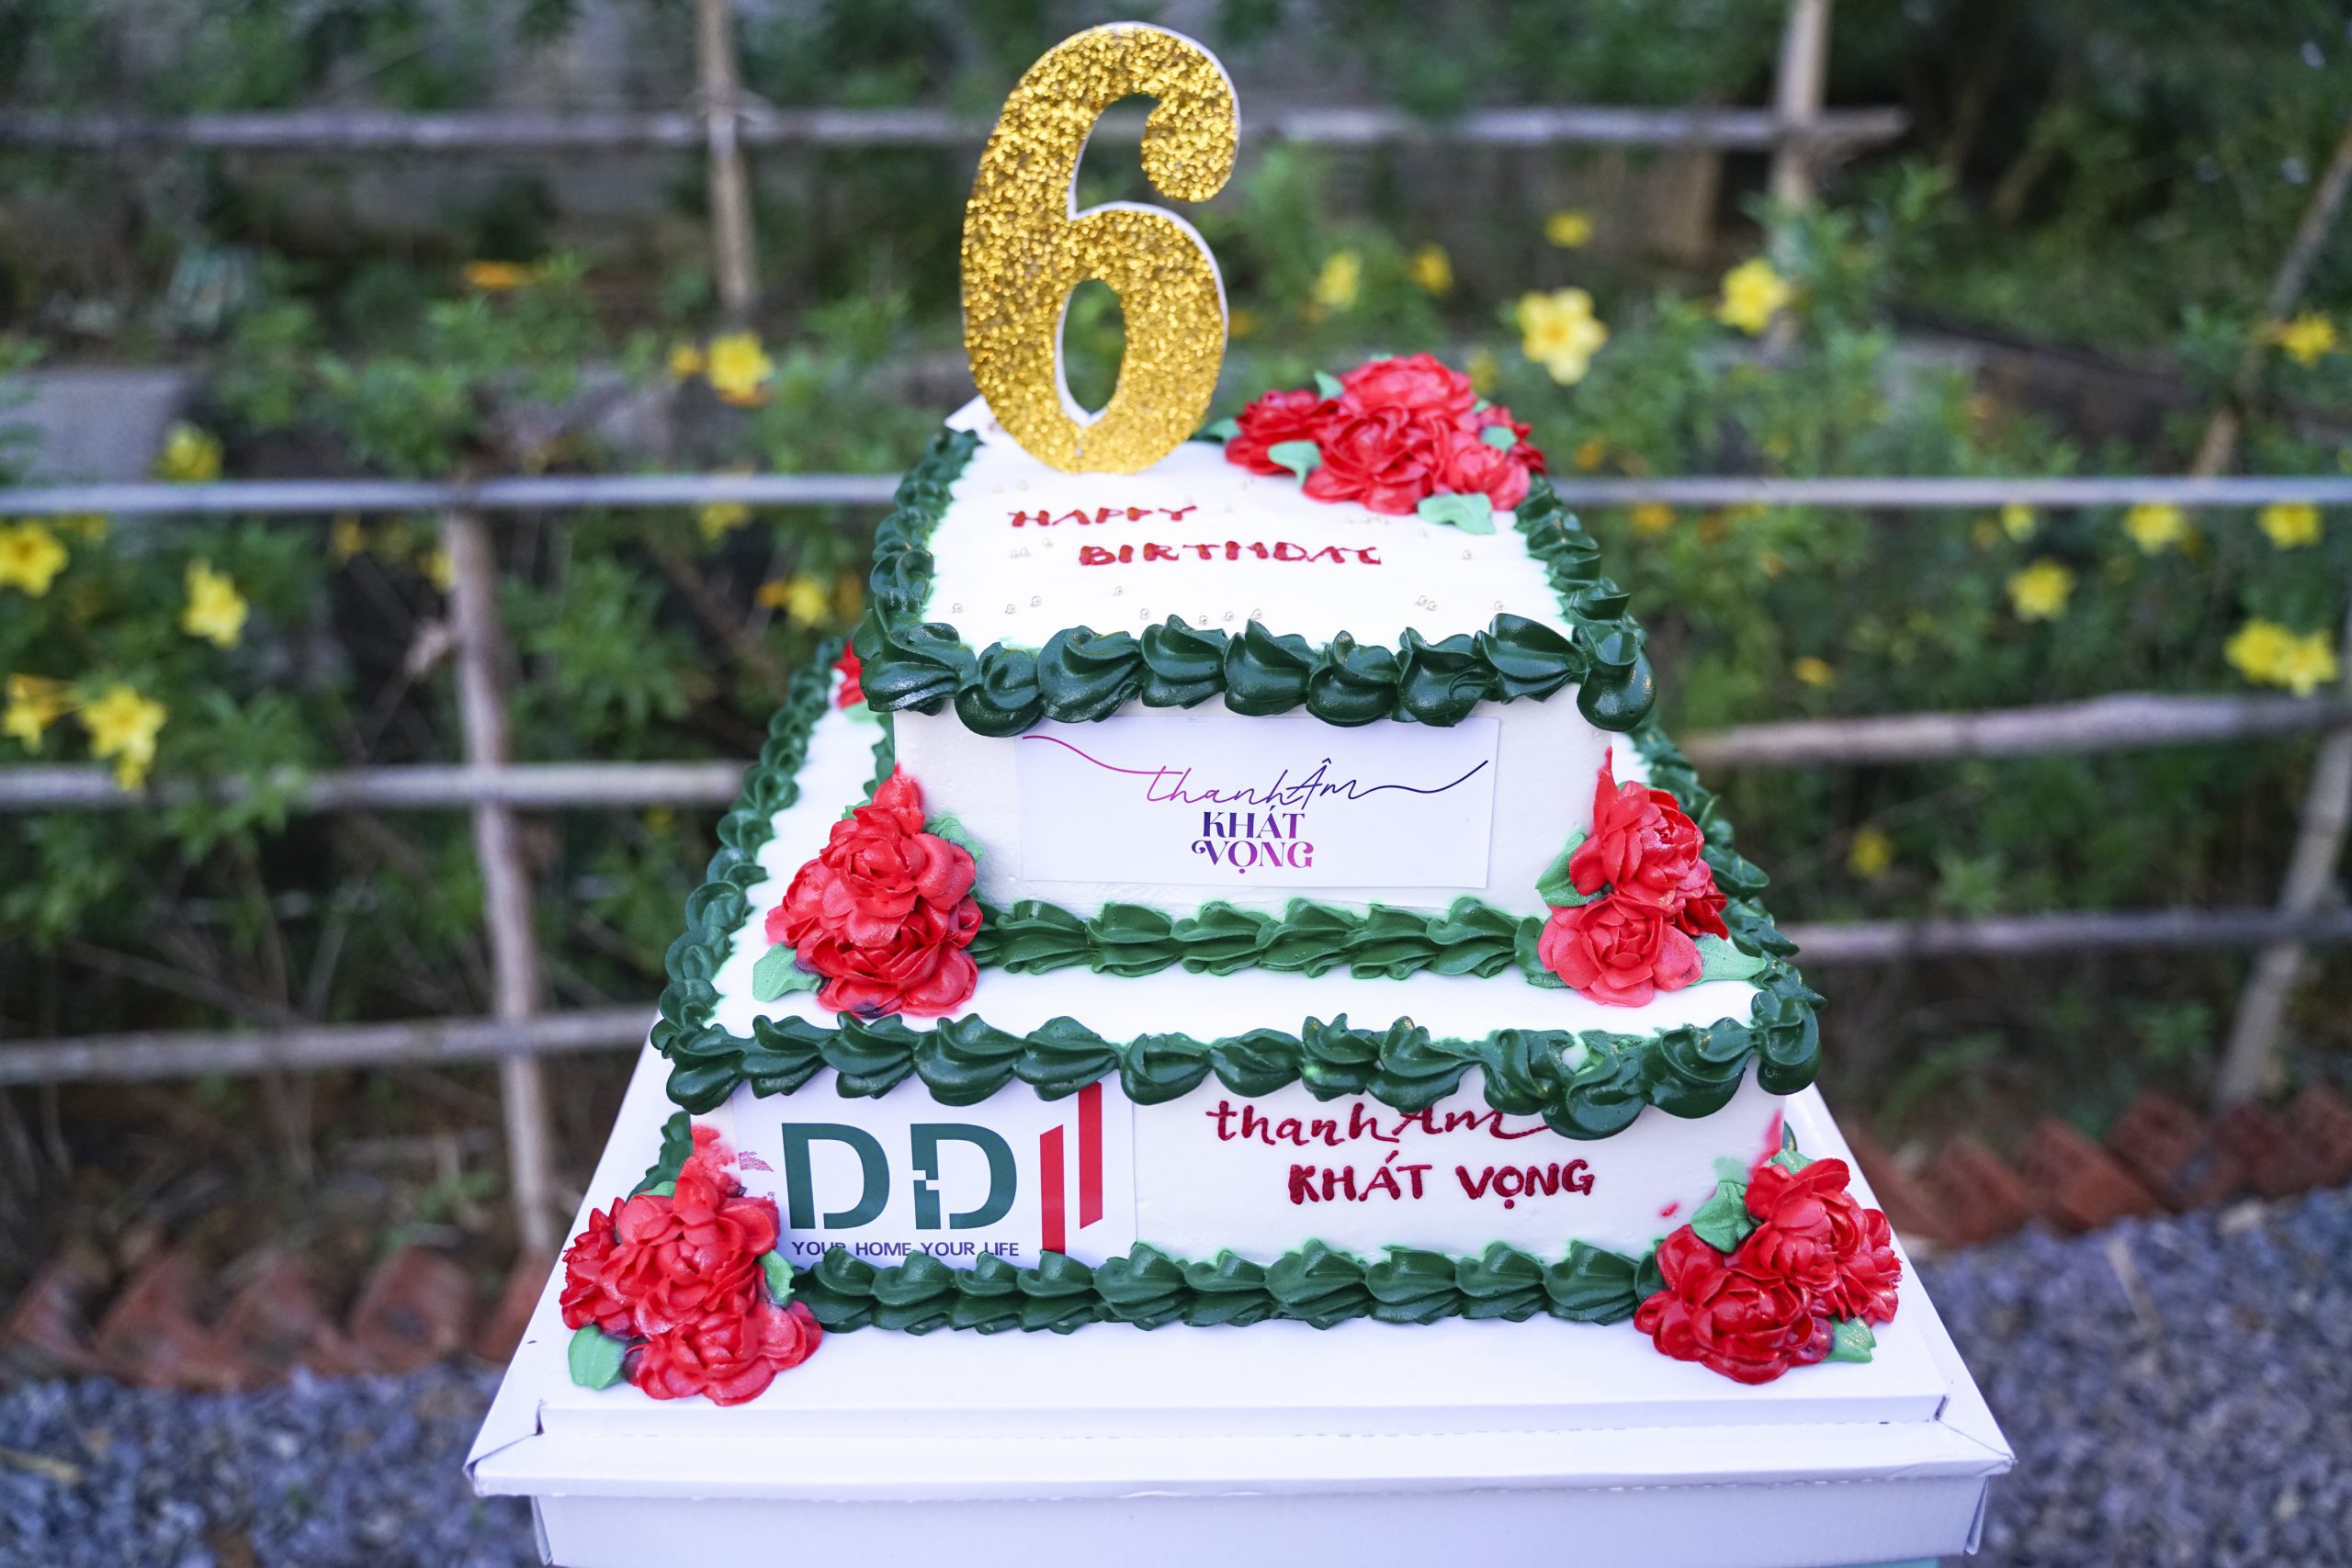 DDI kỷ niệm 6 năm thành lập - Khi “Thanh âm khát vọng” lên tiếng